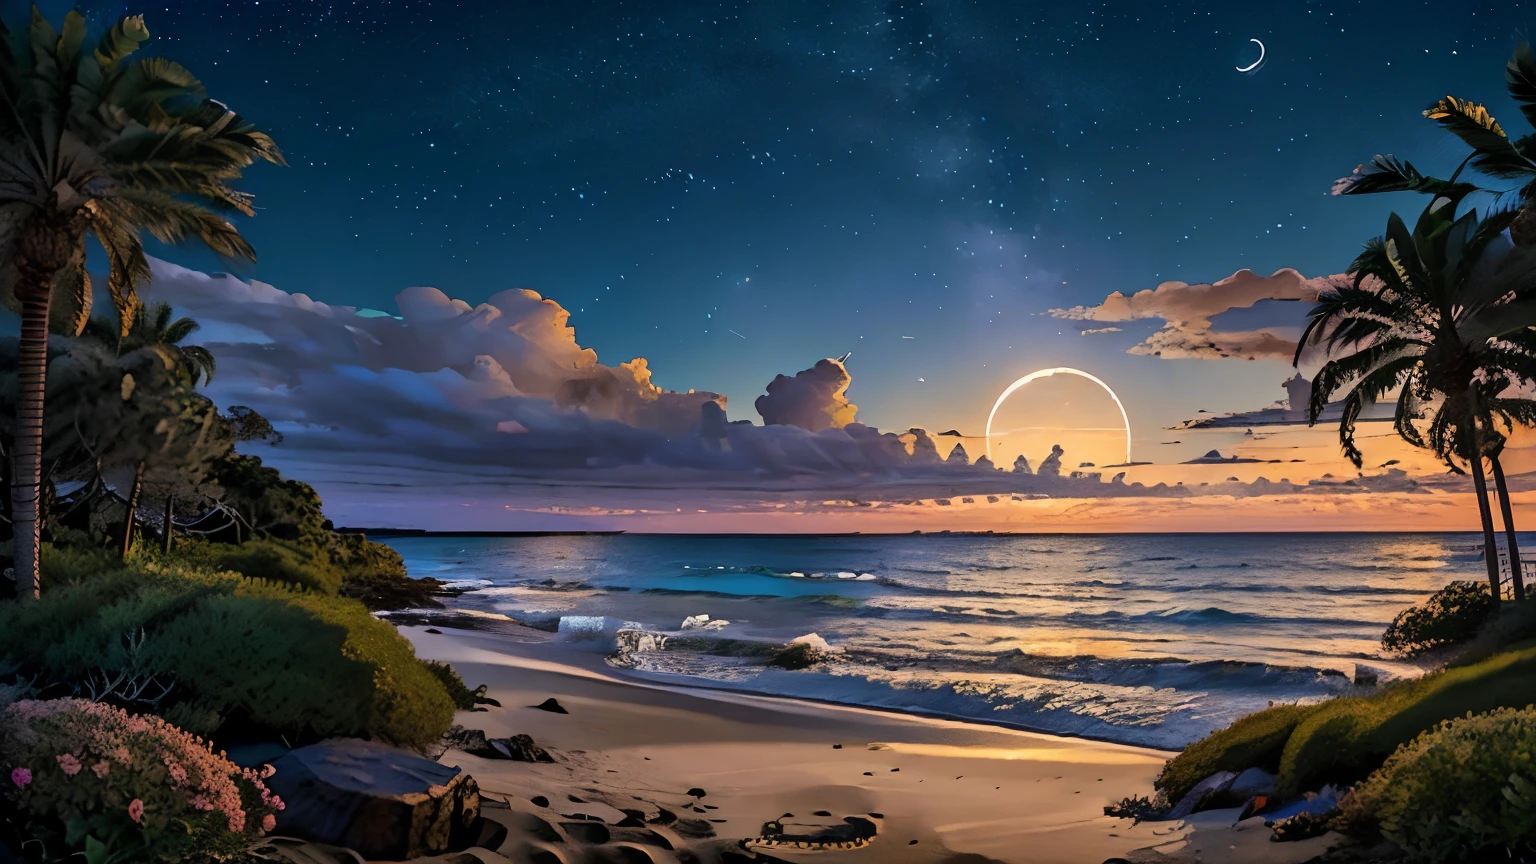 incitar: (((extremamente detalhado))), panorama noturno de uma bela praia, ilhas ao longe, Poucas nuvens, e palmeiras, céu estrelado, lua,
(((nada ali, alta definiçãoR, alta definição, 4K, 8K))), preencher iluminação, linha fina e delicada